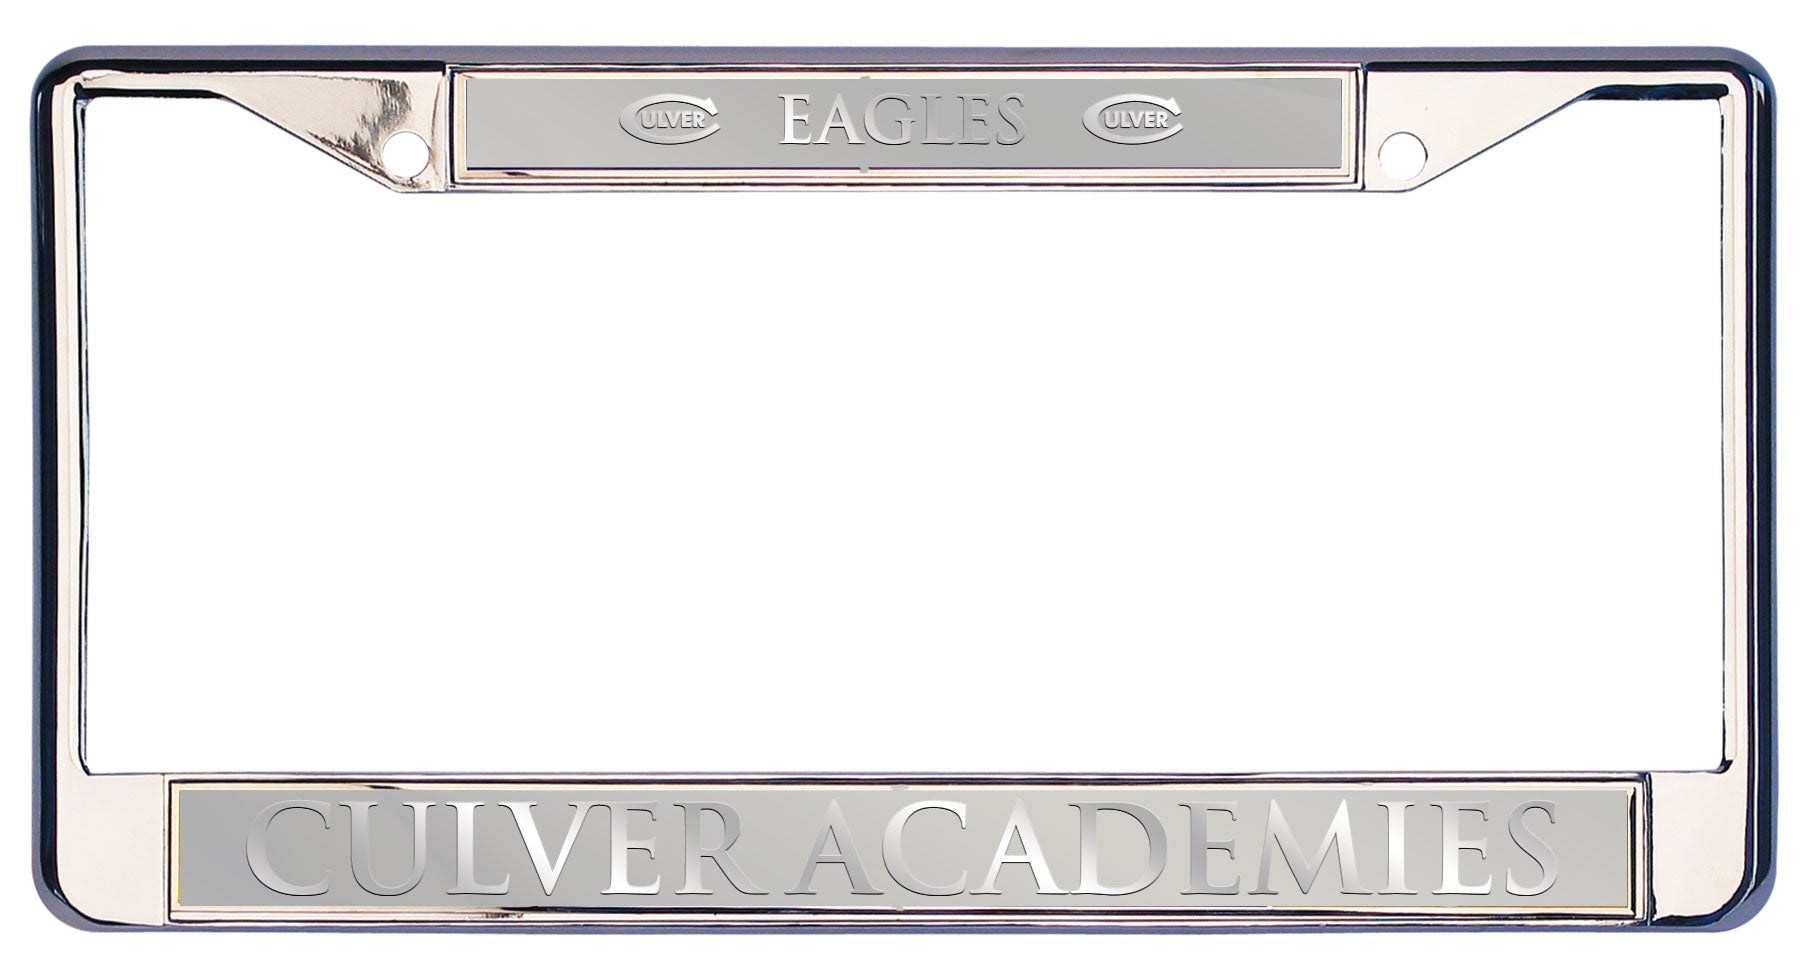 Culver Academies Executive License Plate - Silver